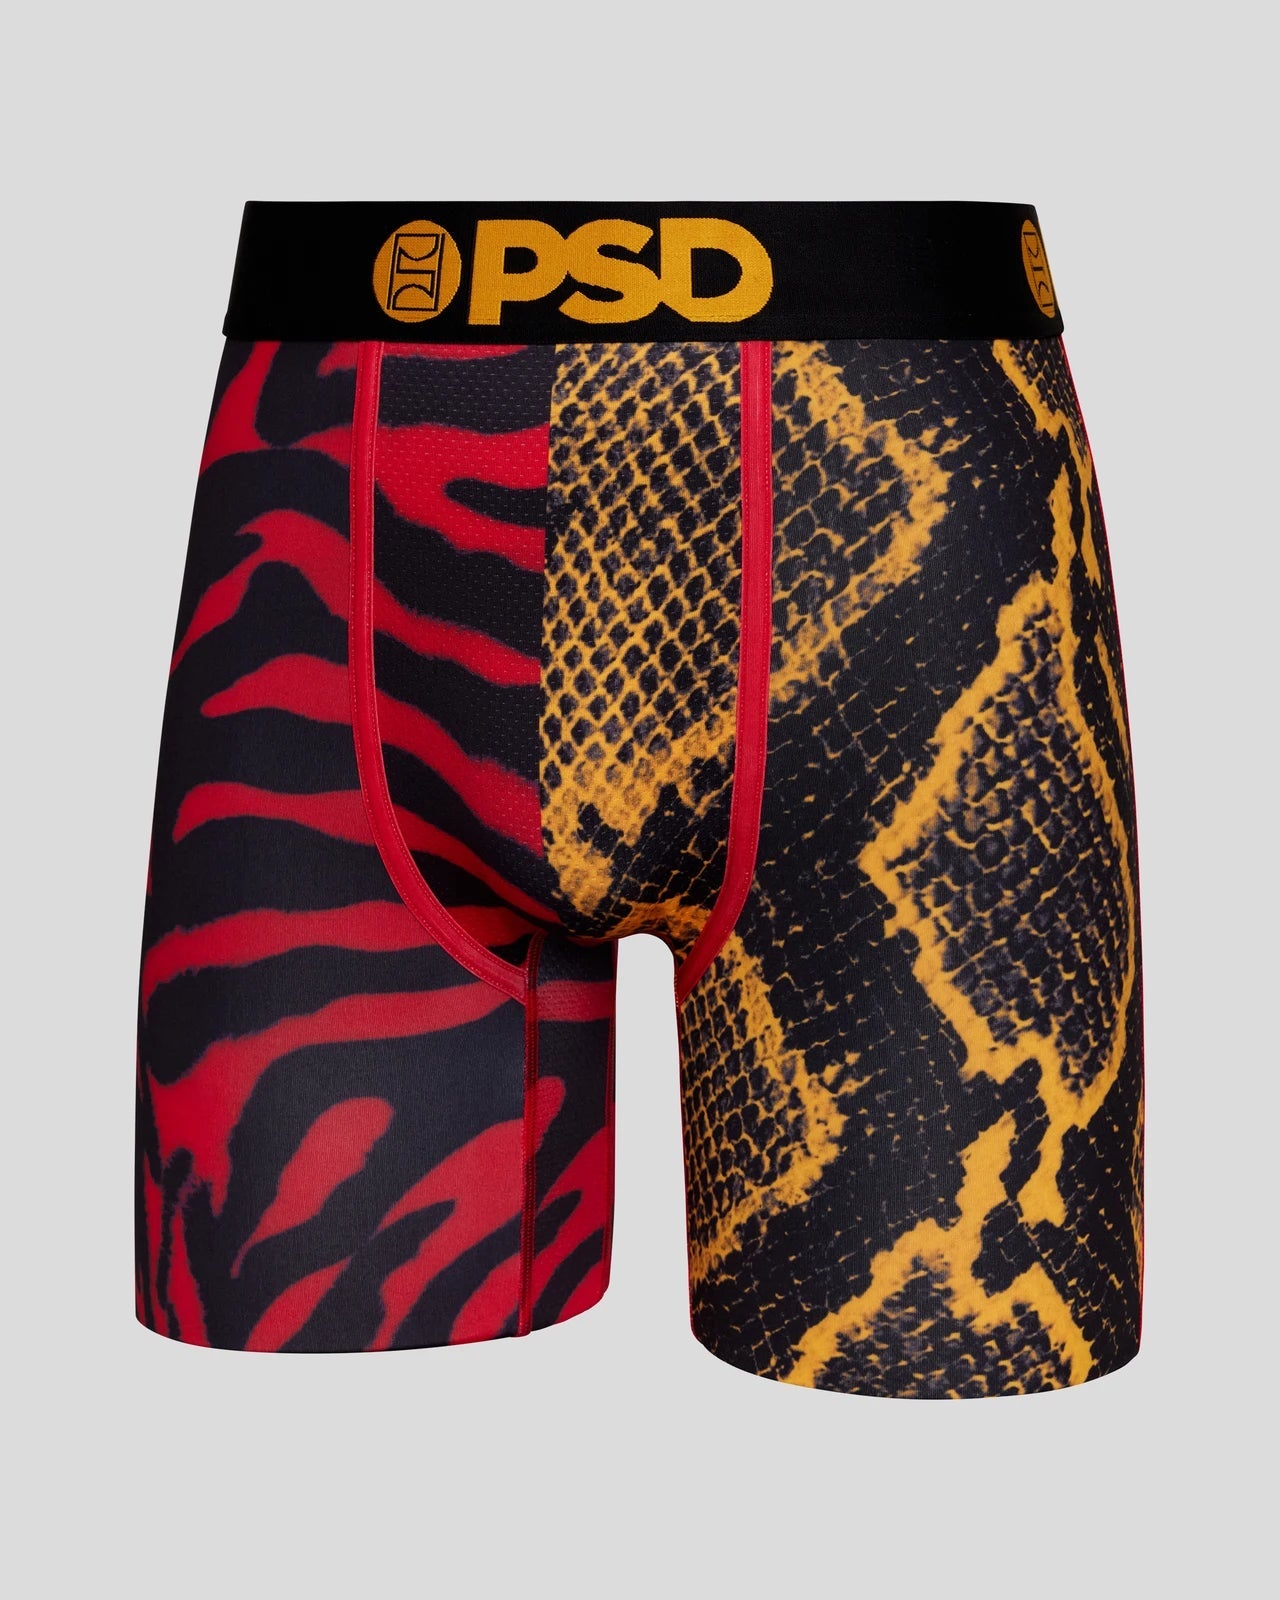 PSD Underwear Australia on Instagram: BRATZ – CAMO POP Sports Bra